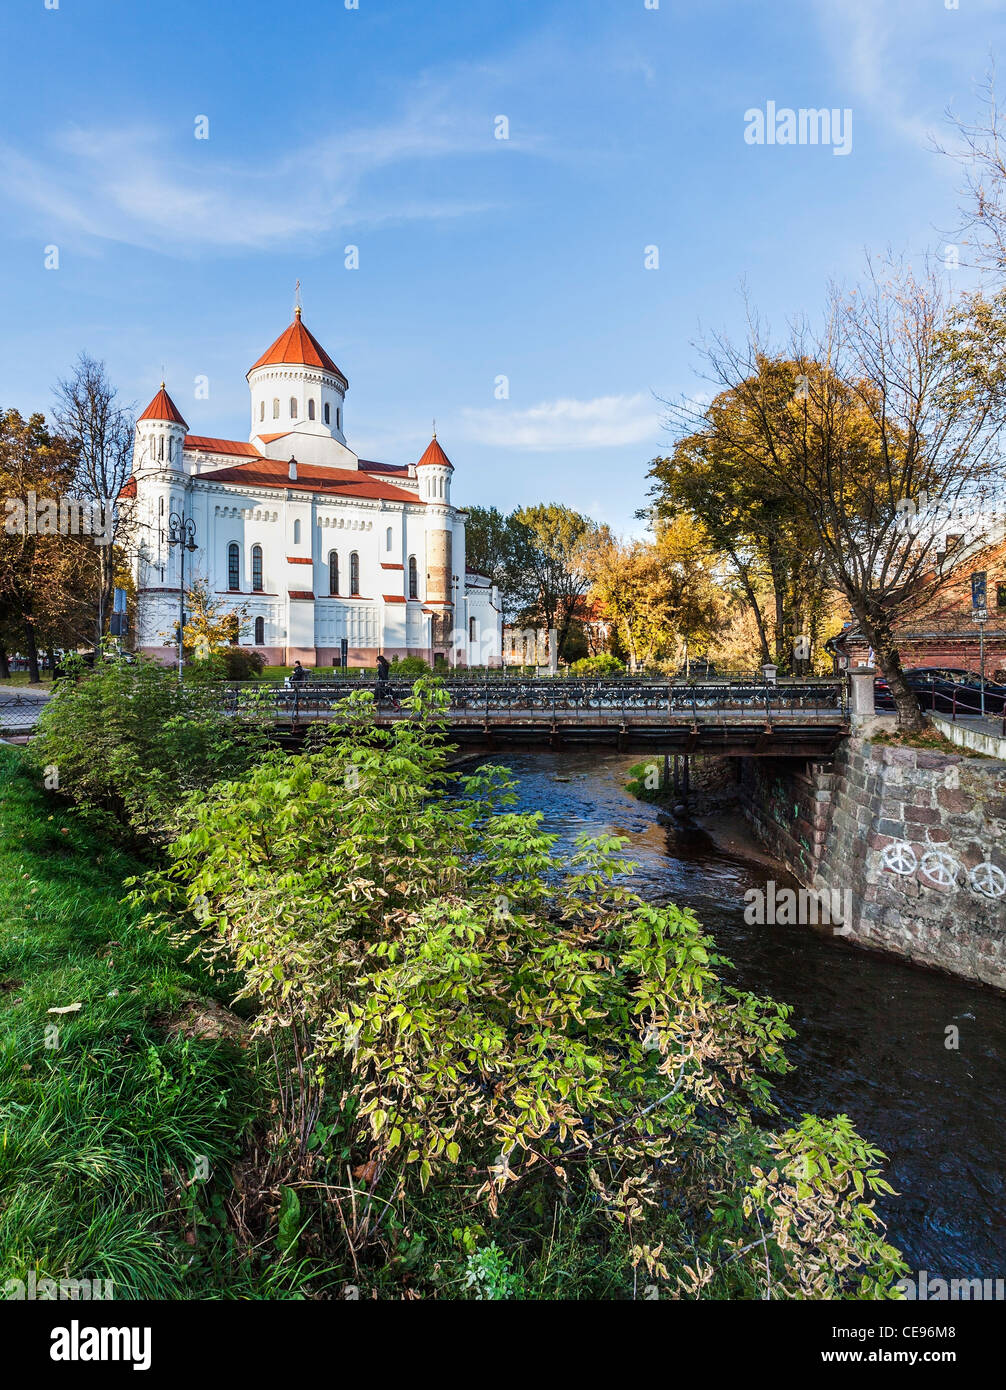 La Santa Madre di Dio Chiesa Ortodossa, Vilnius, Lituania, con colore di autunno, al fiume e al ponte in primo piano Foto Stock